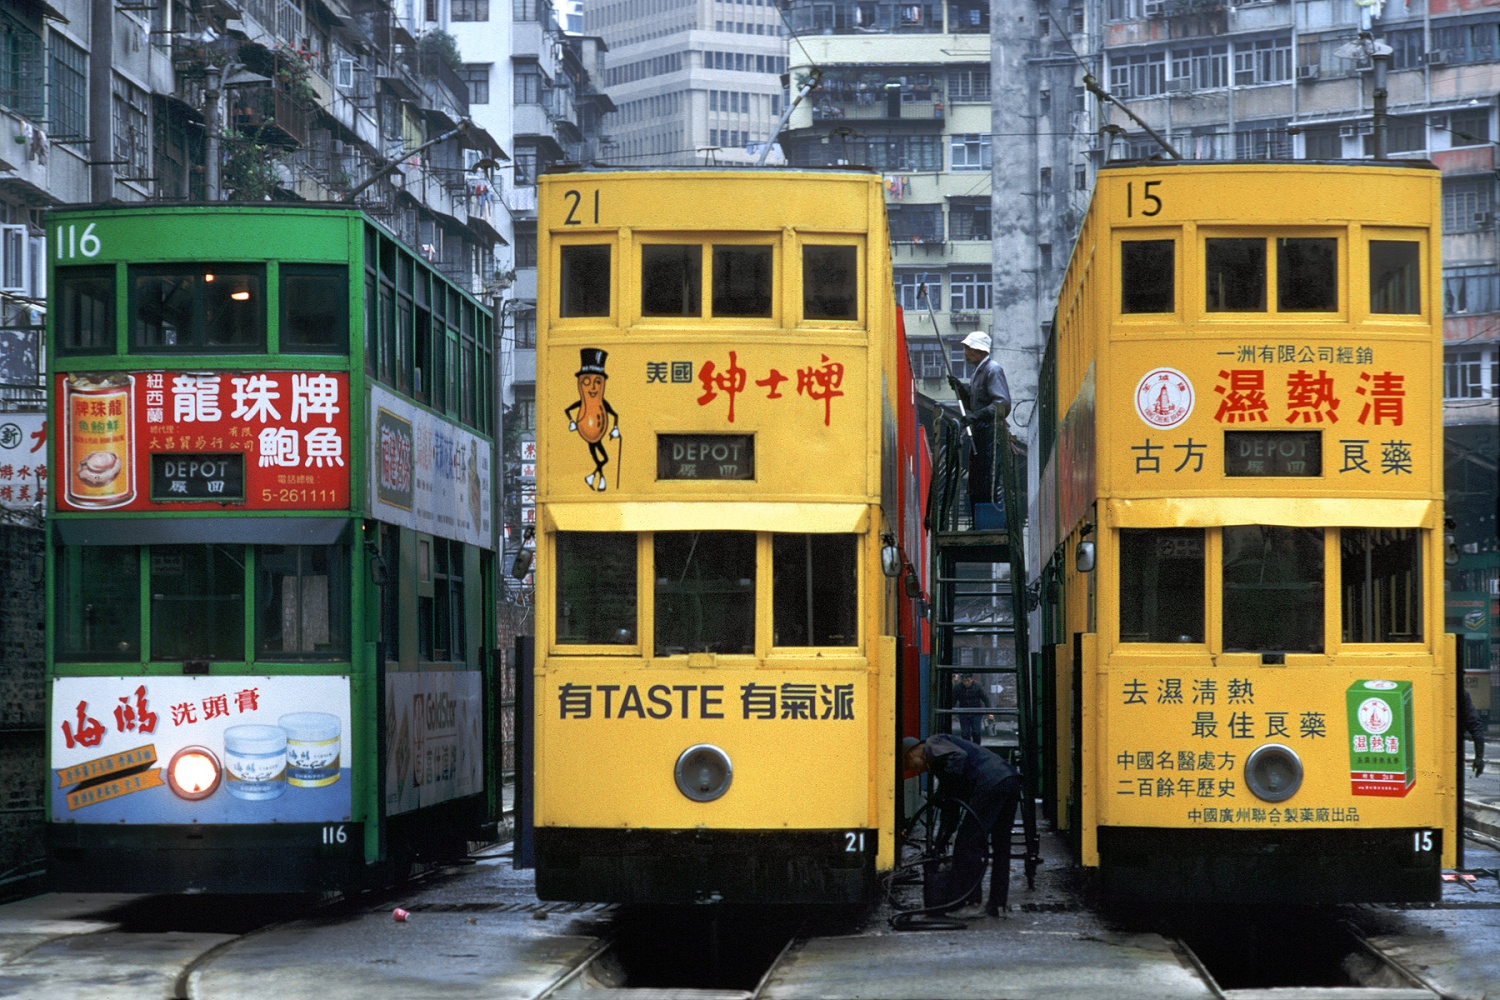 bill-hocker-russell-street-tram-depot-causeway-bay-hong-kong-1988